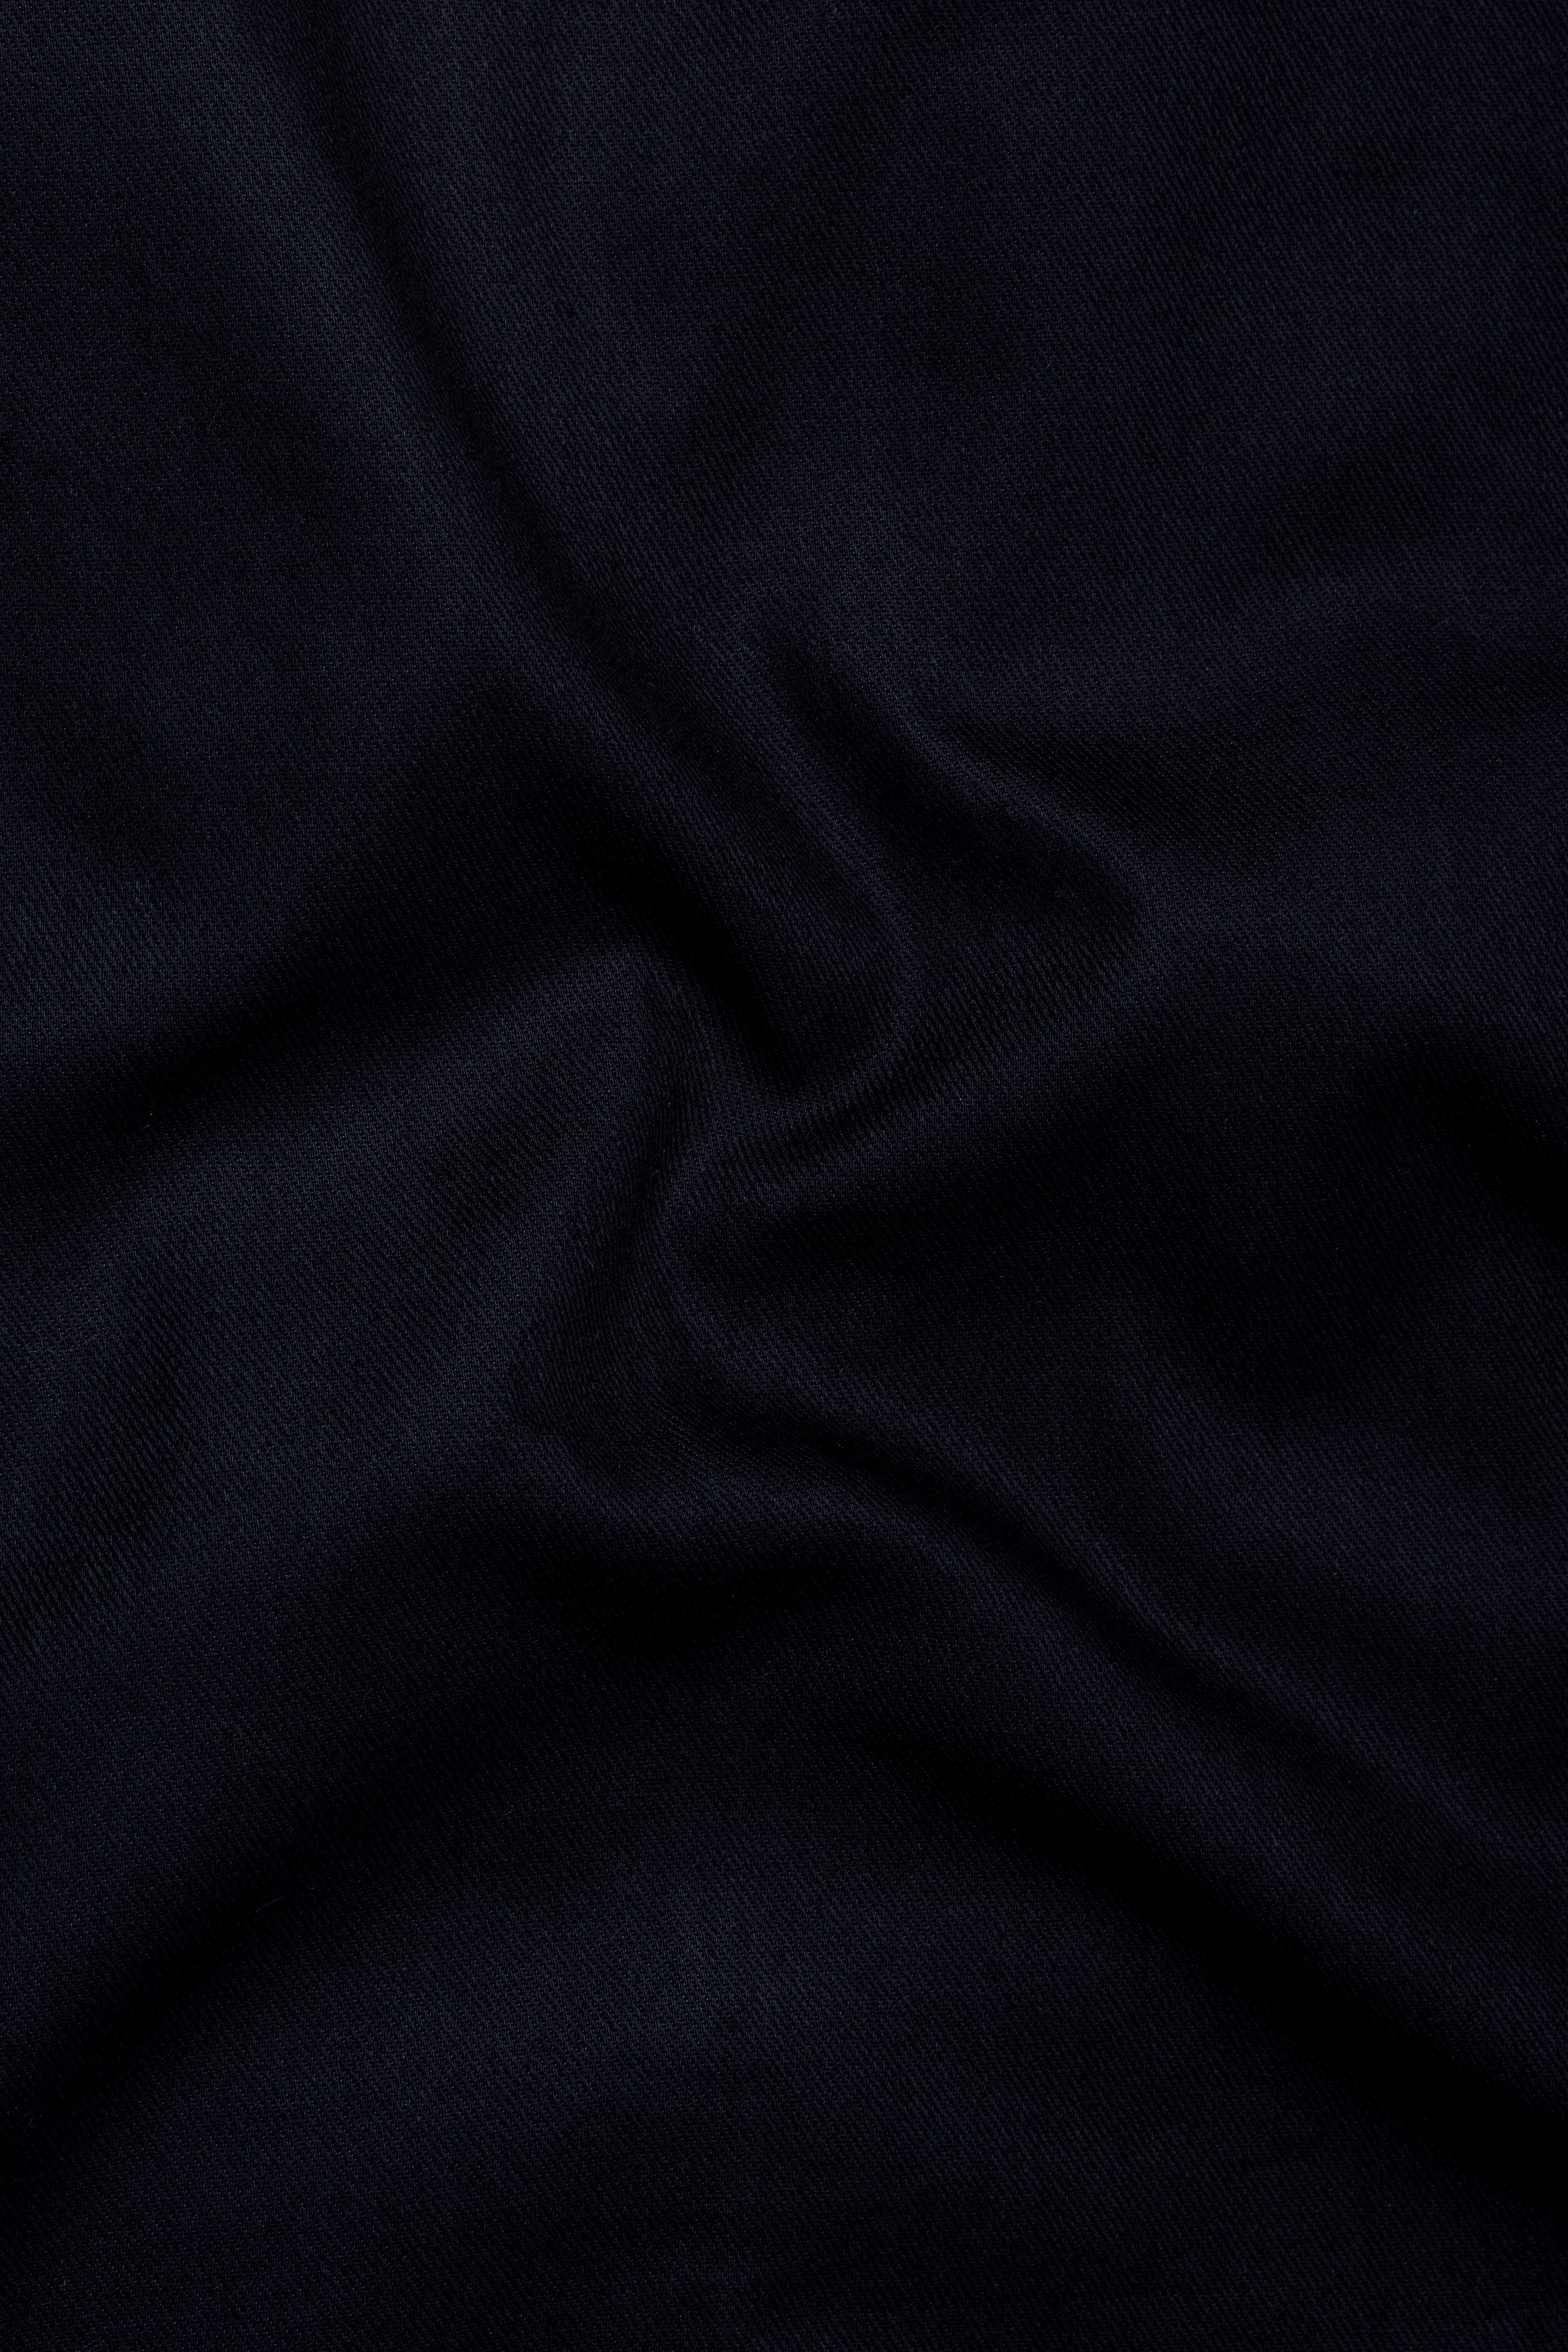 Mirage Blue Premium Cotton Waistcoat V2759-36, V2759-38, V2759-40, V2759-42, V2759-44, V2759-46, V2759-48, V2759-50, V2759-52, V2759-54, V2759-56, V2759-58, V2759-60